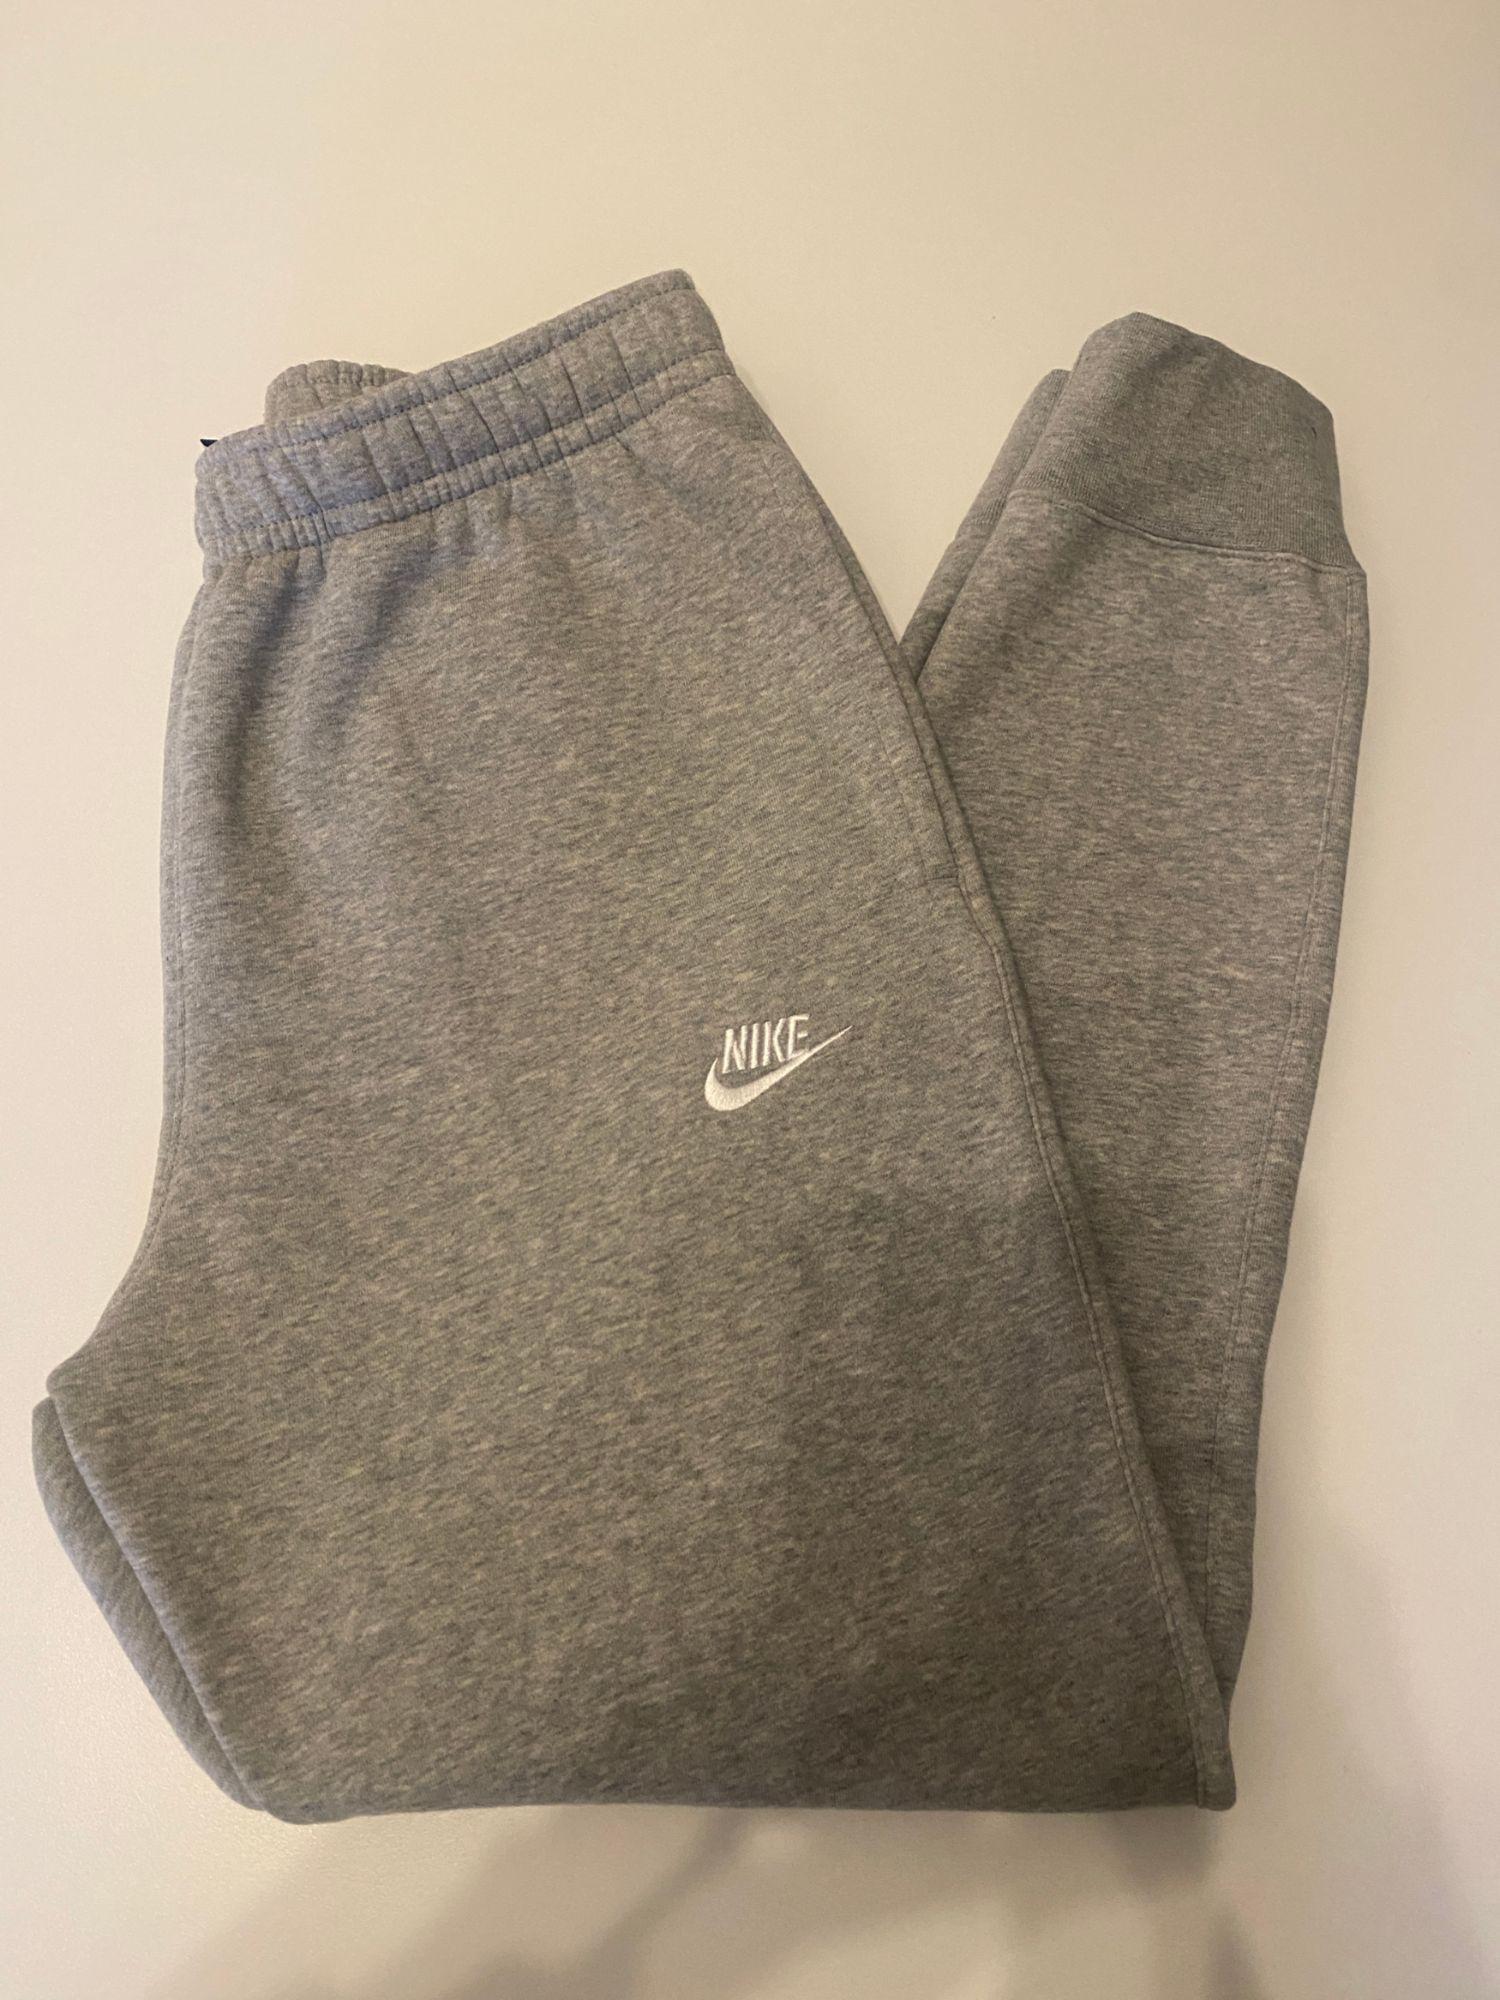 Bas de jogging Nike homme gris neuf taille M avec étiquette